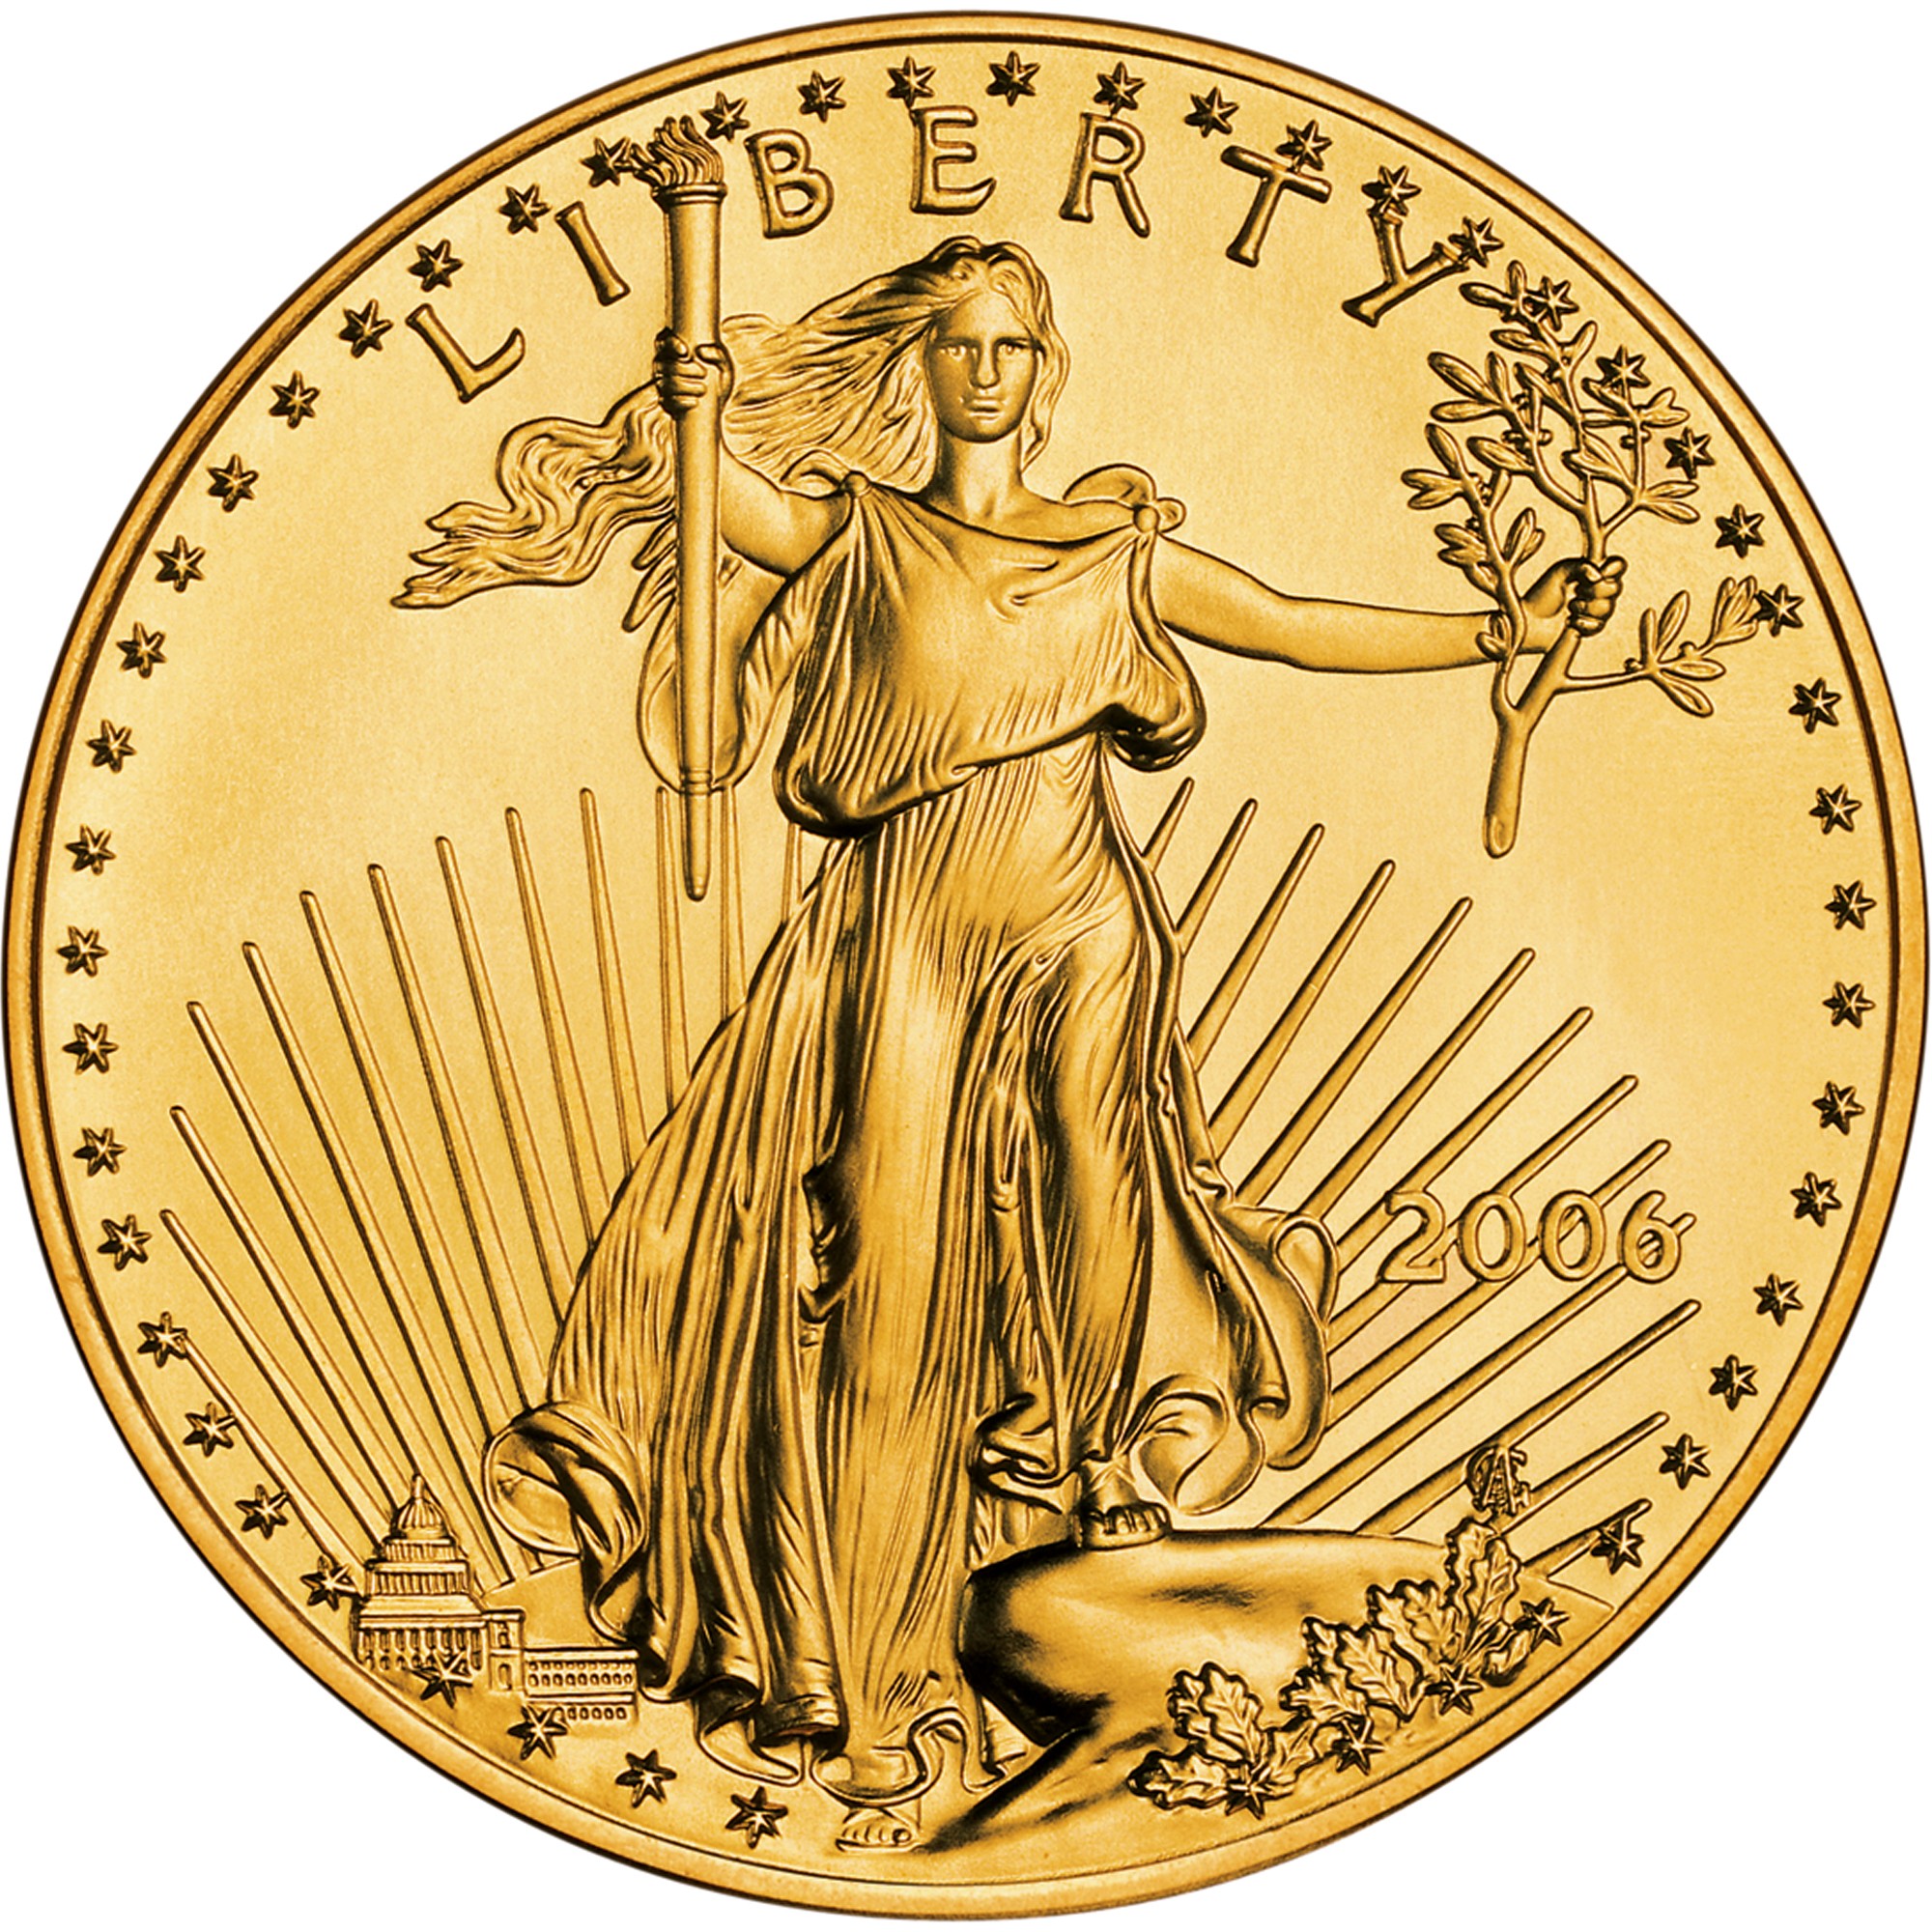 Eagle befektetési arany érme előlapja "Lady Liberty"